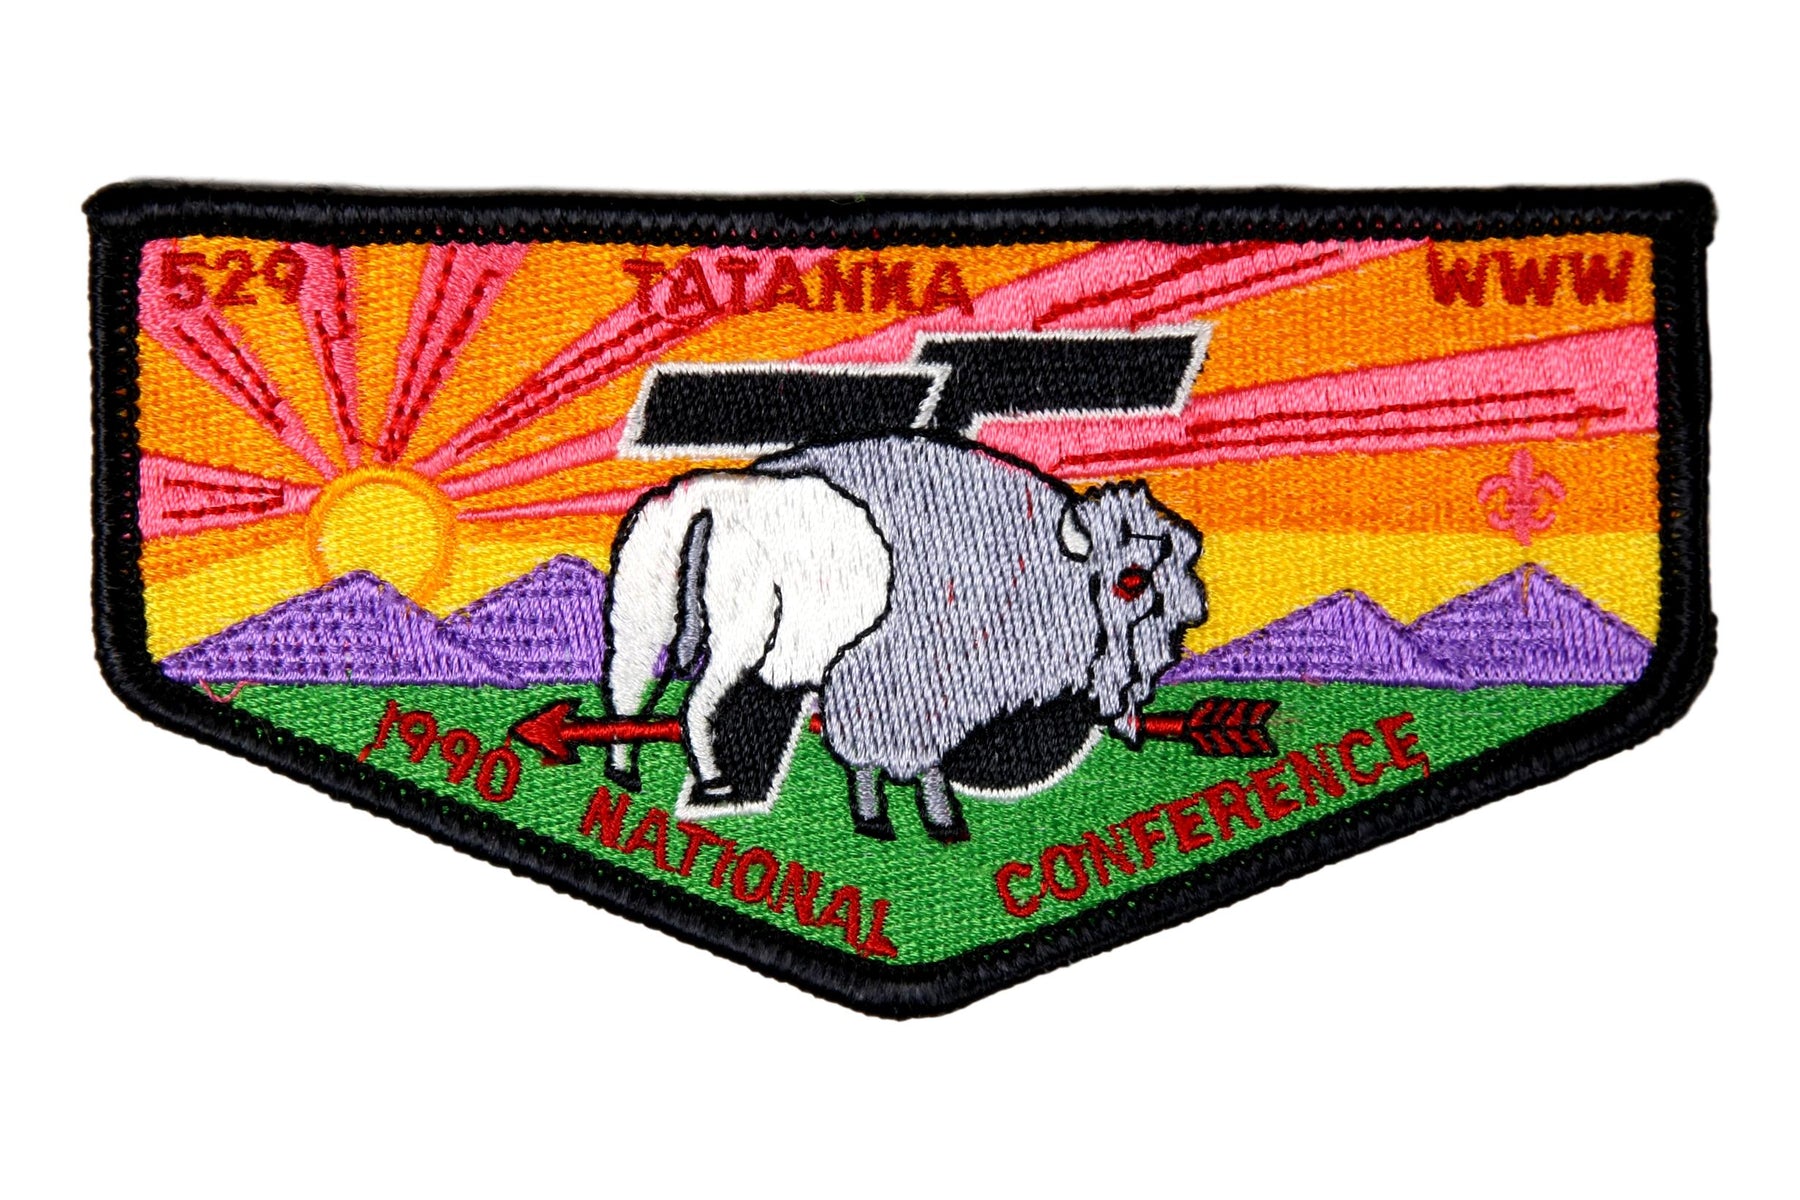 Lodge 529 Tatanka Flap S-16